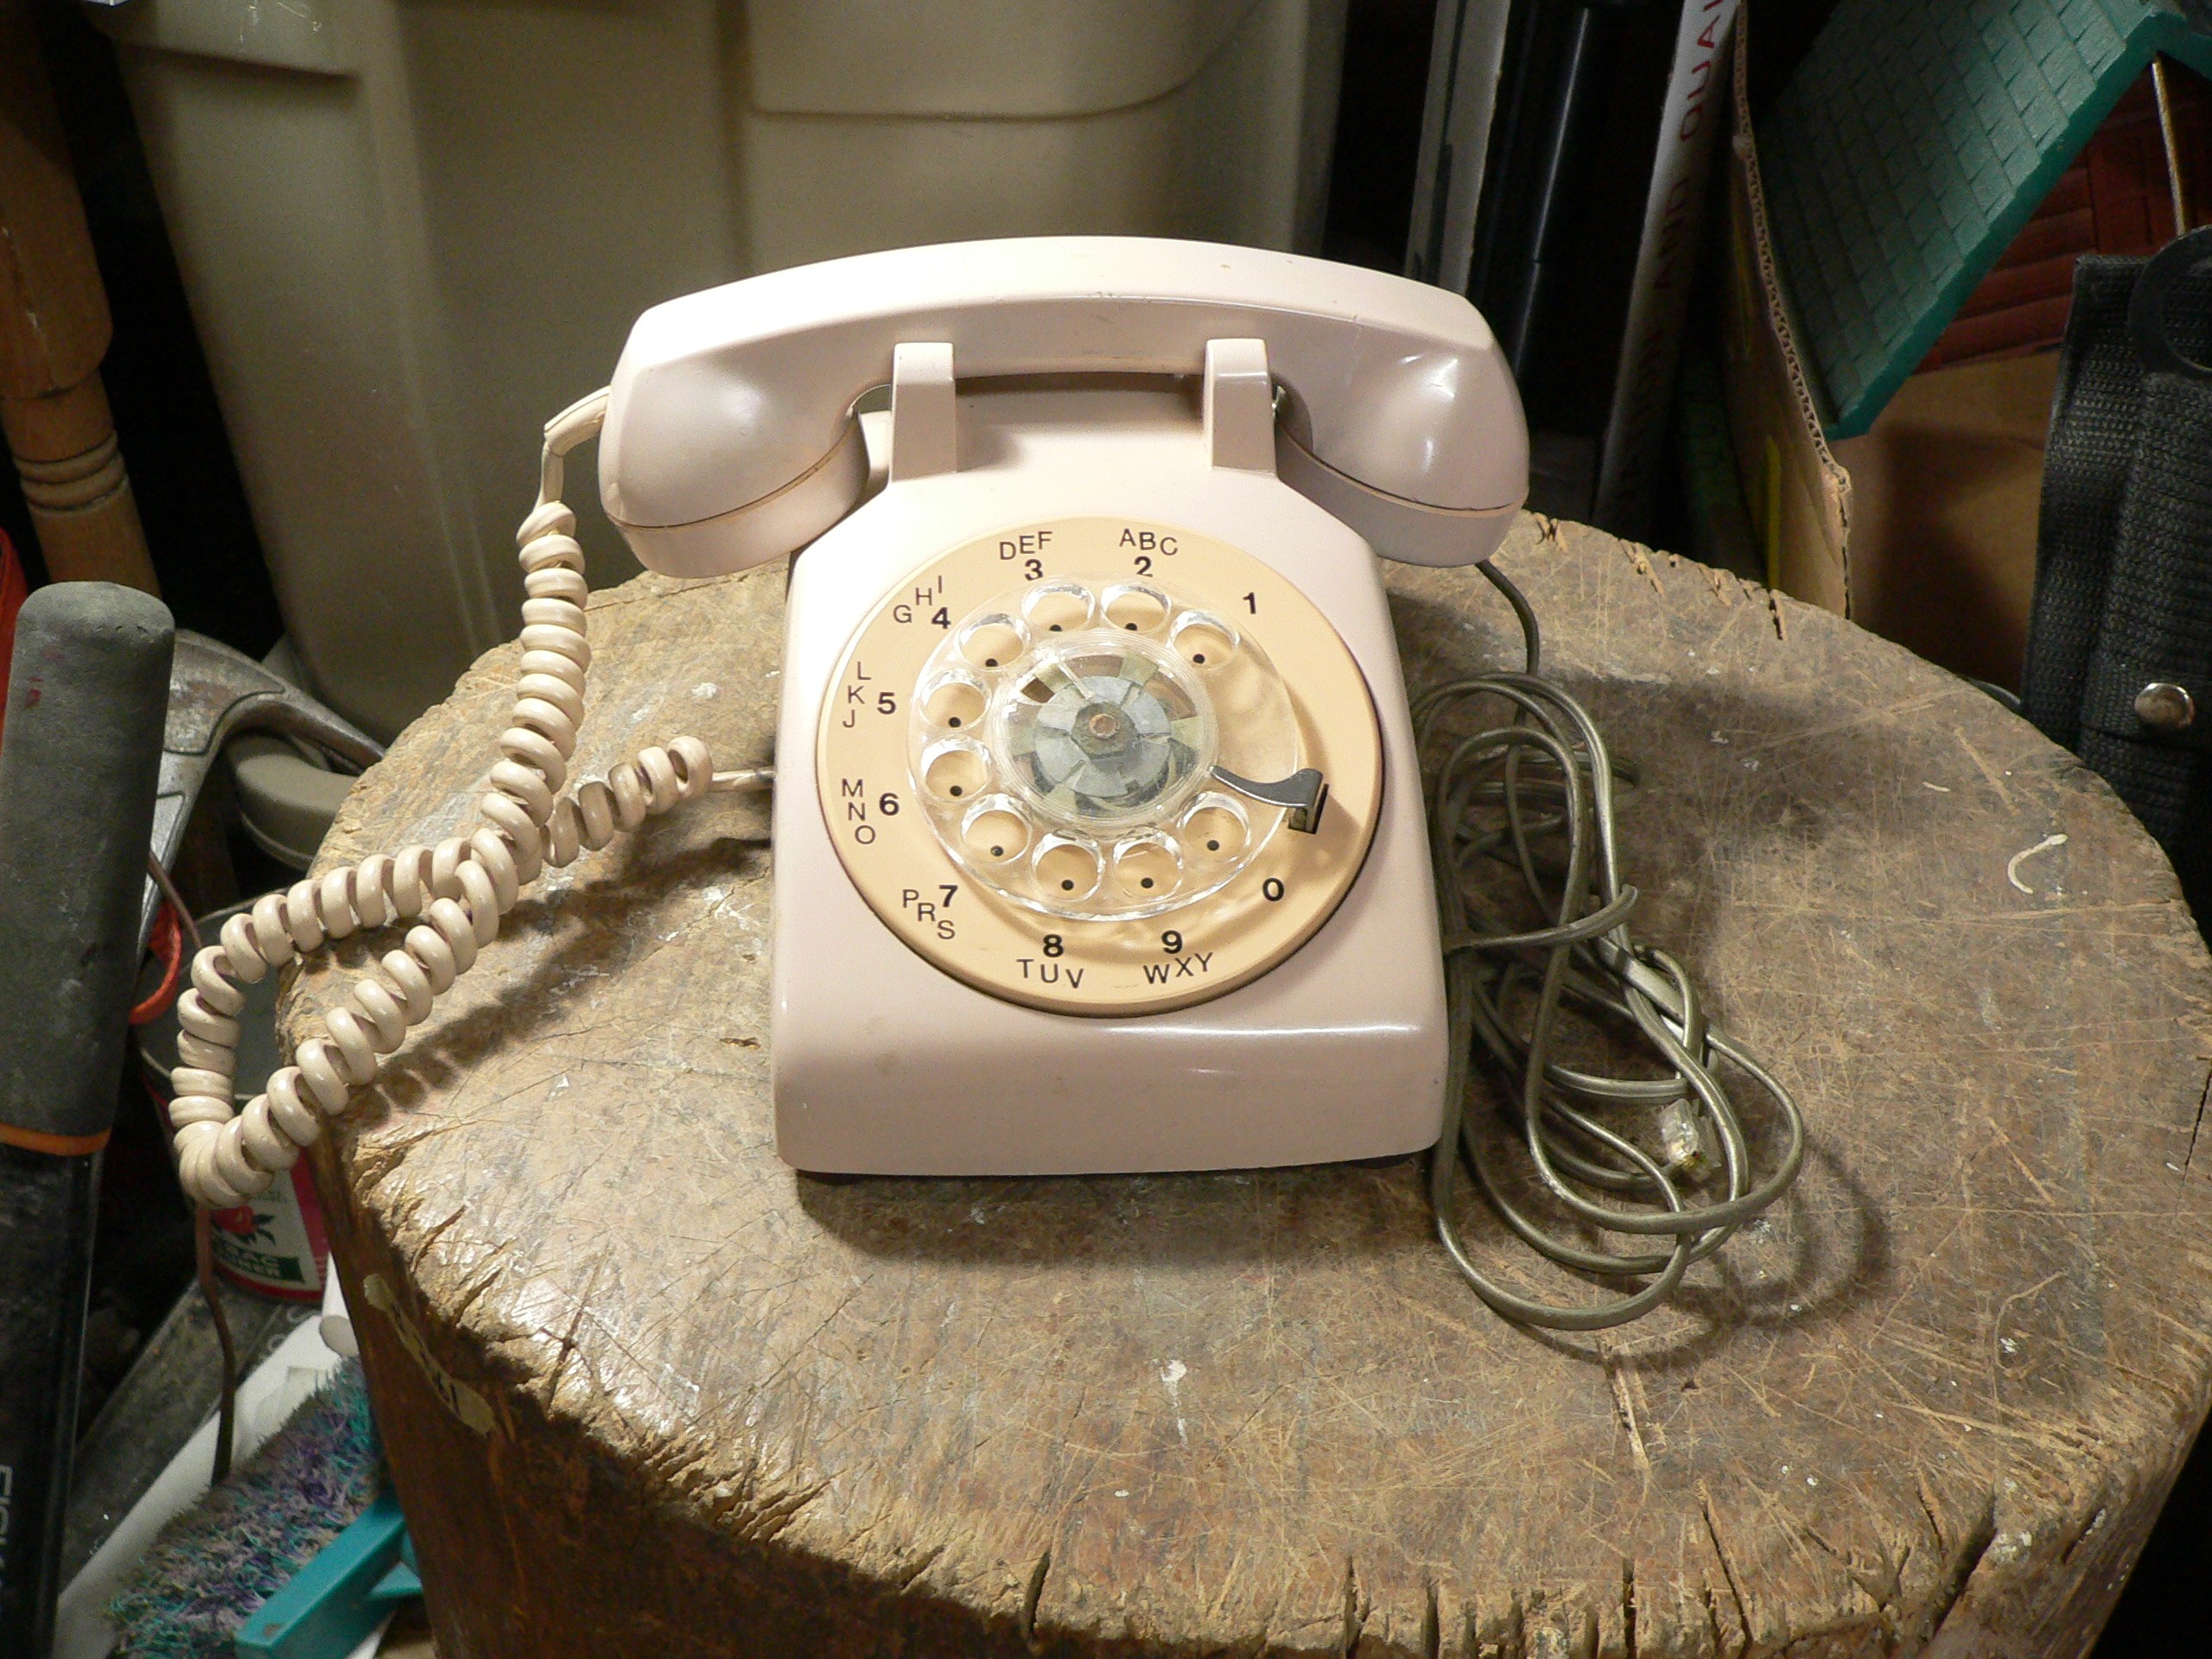 Téléphone antique rose a roulette # 9642